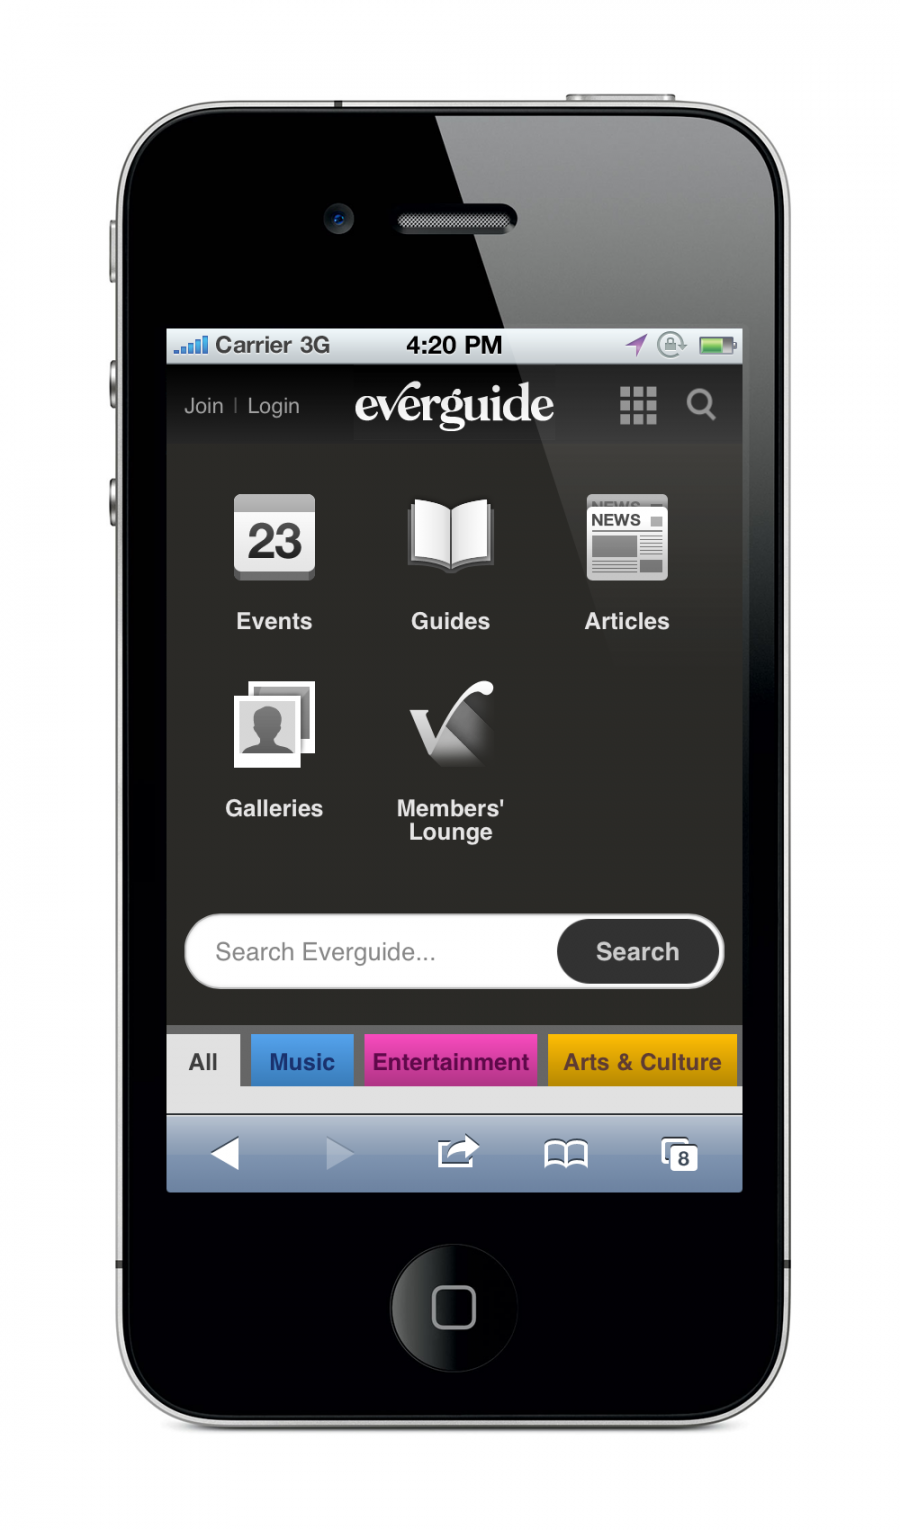 Everguide Mobile Site - Menu